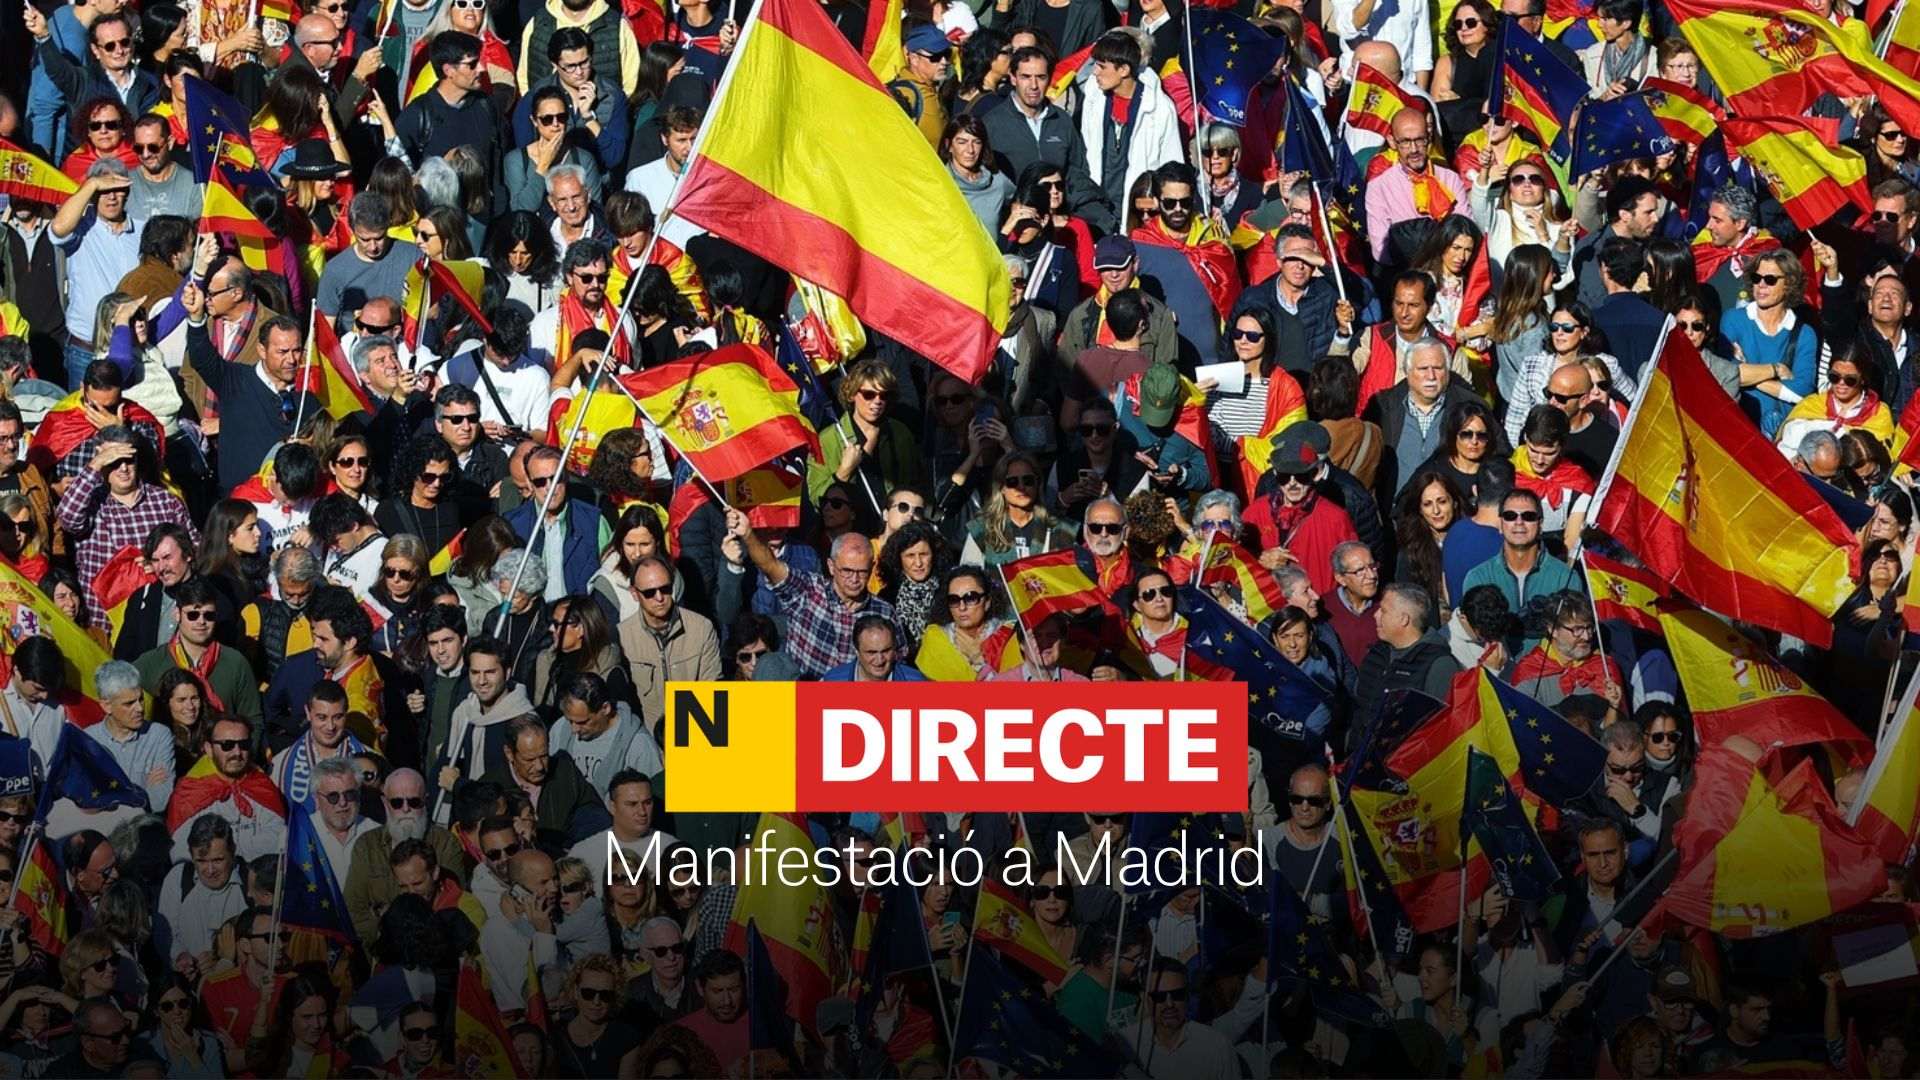 Manifestació a Madrid contra l'amnistia, avui, DIRECTE | Última hora i reaccions a la protesta a Cibeles